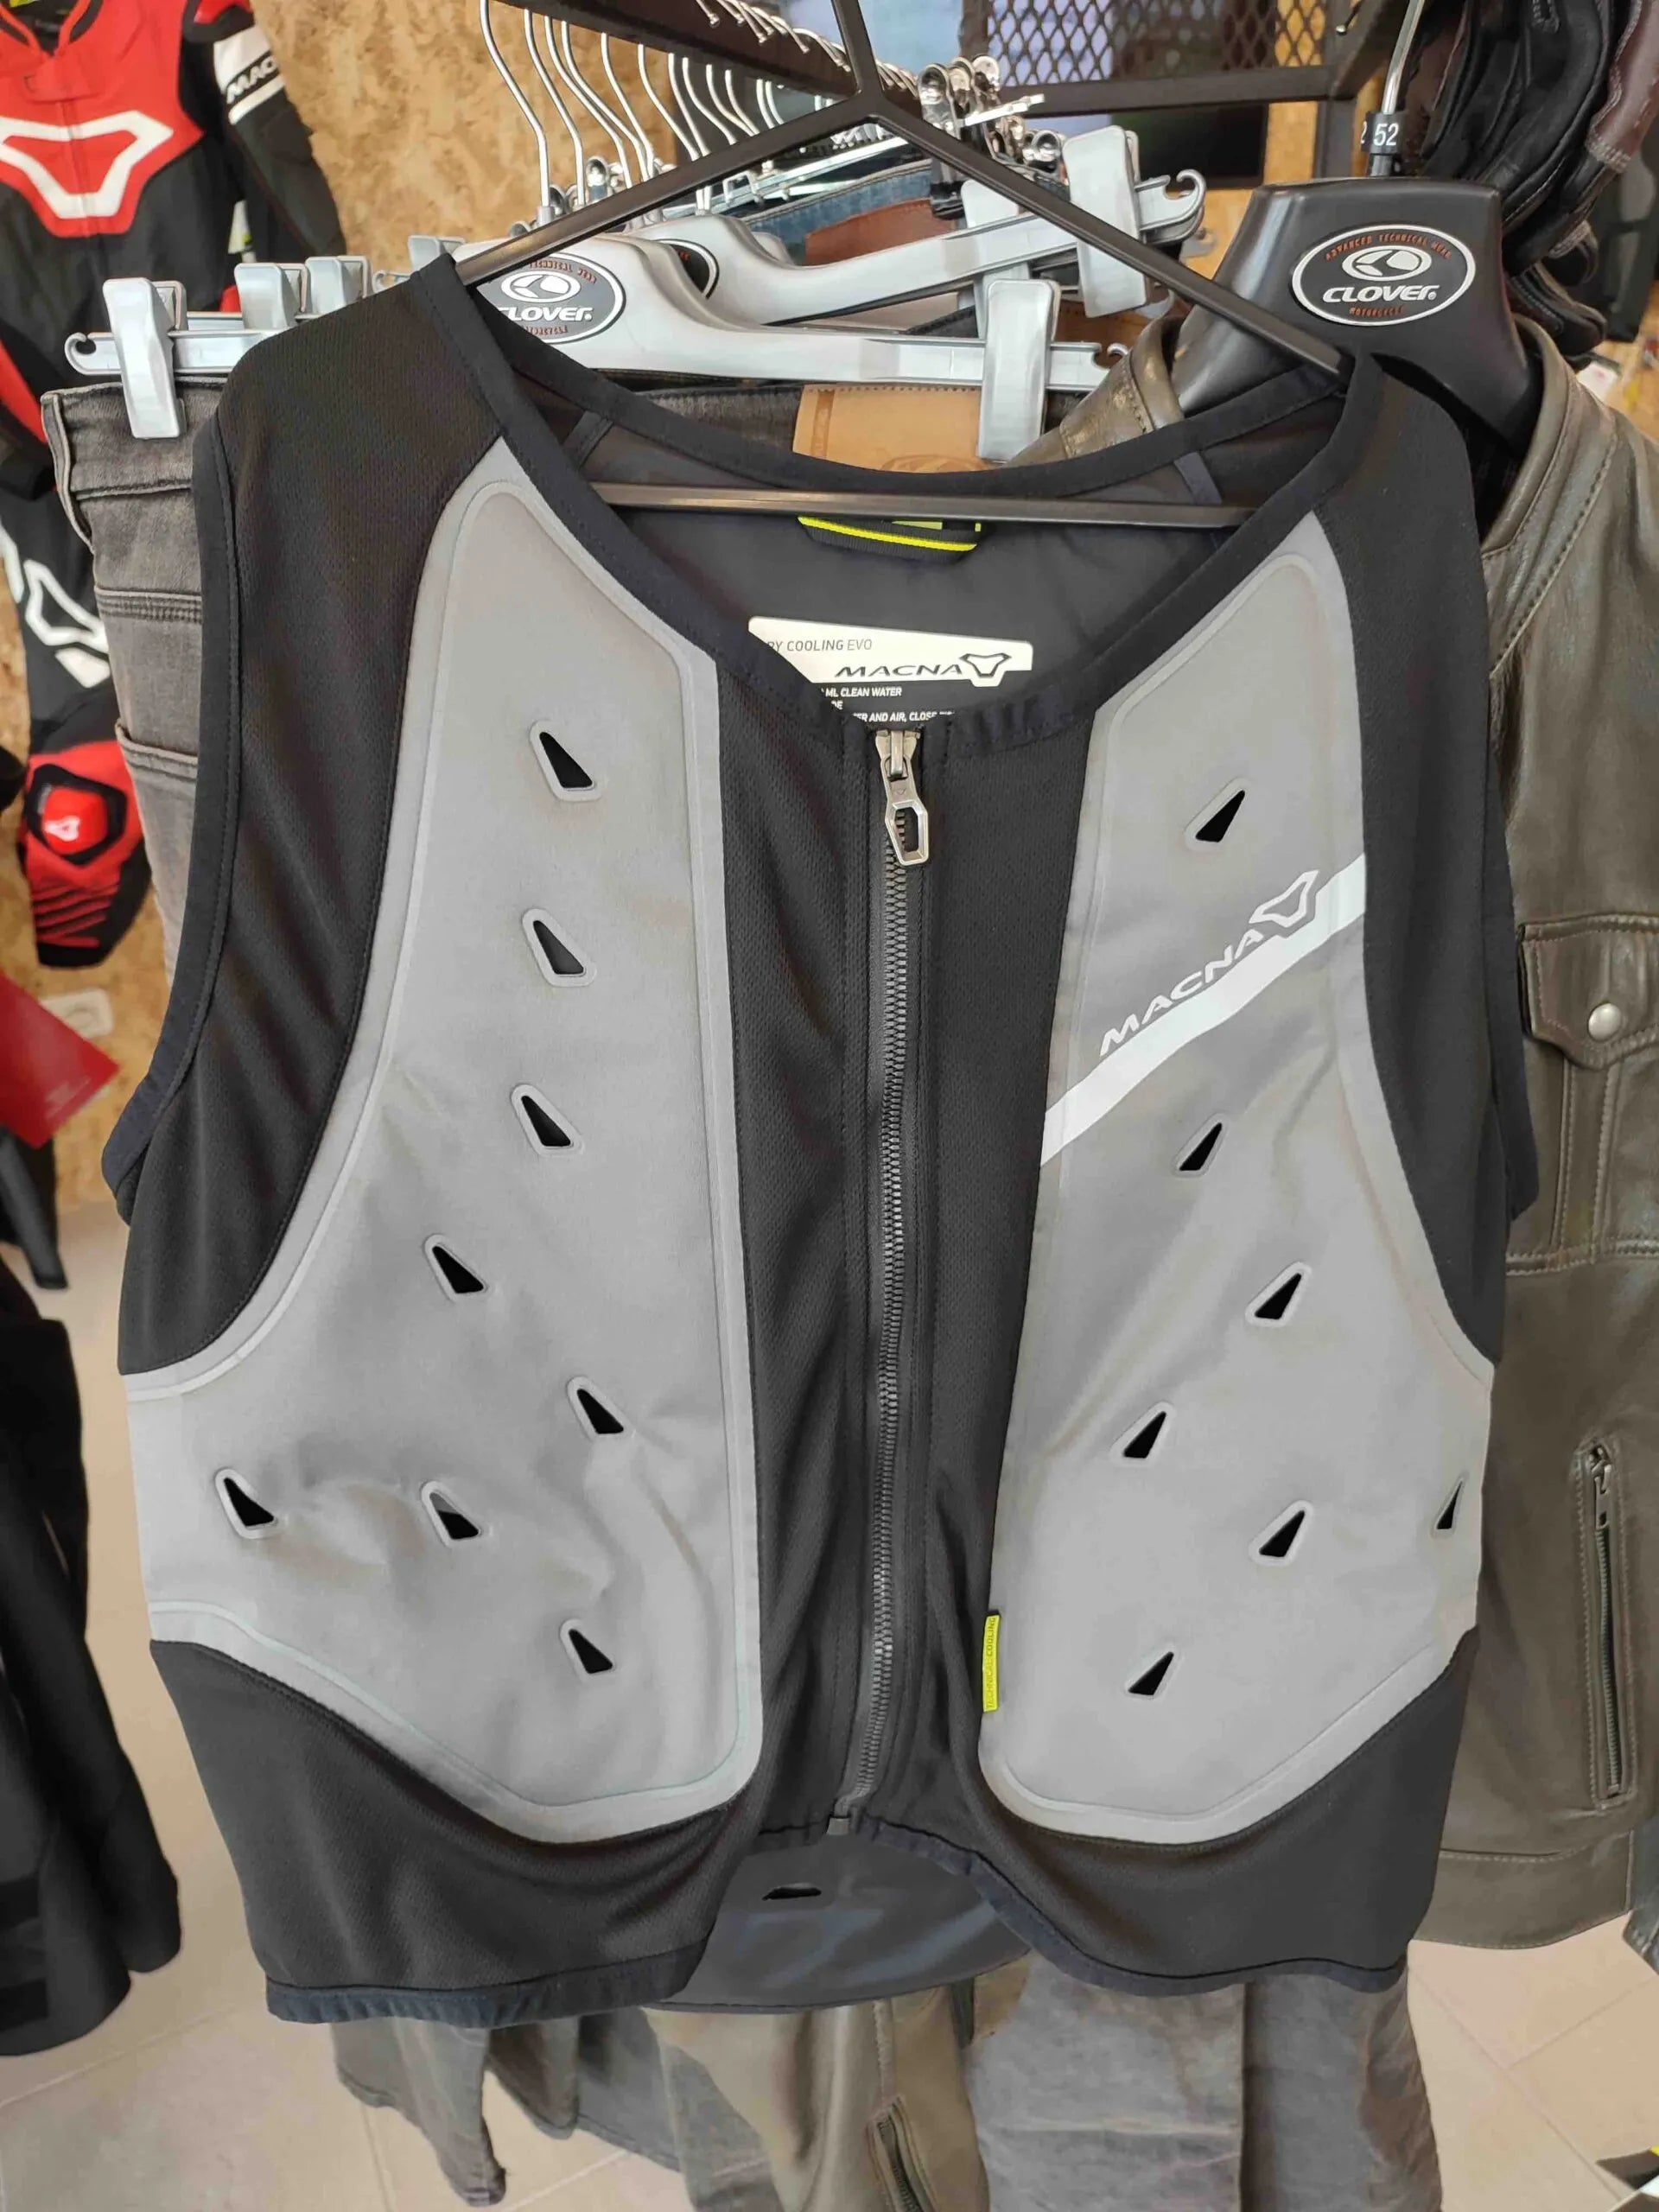 gilet macna dry cooling vest